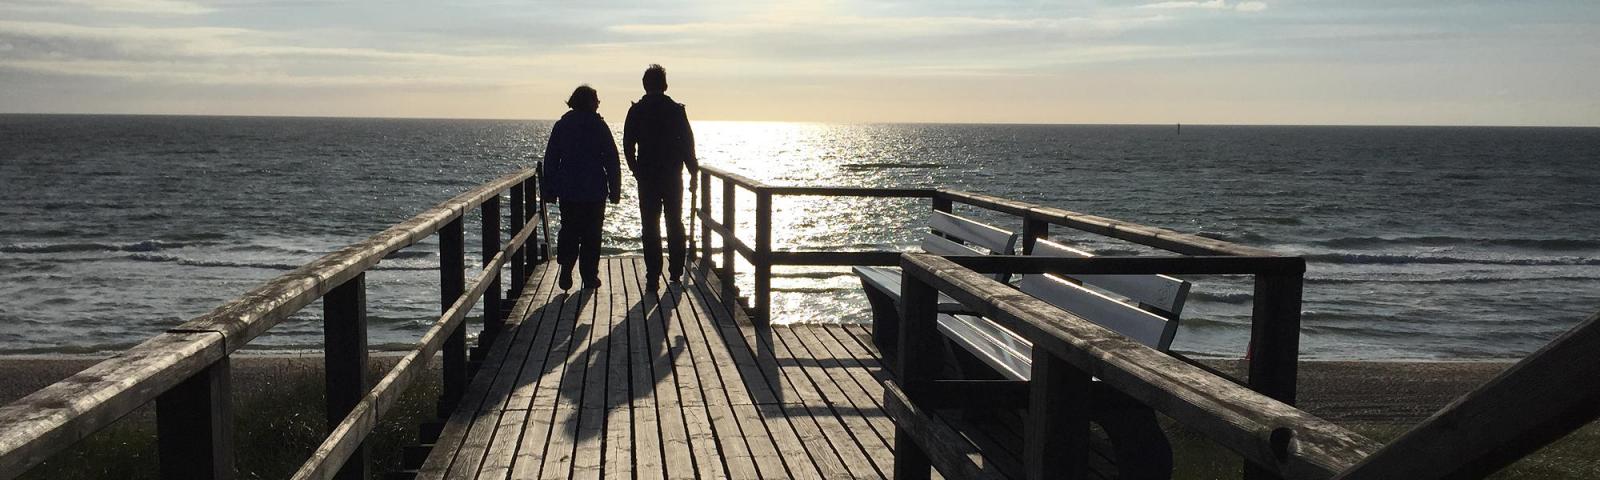 Zwei Personen im Gegenlicht schauen auf das Meer.